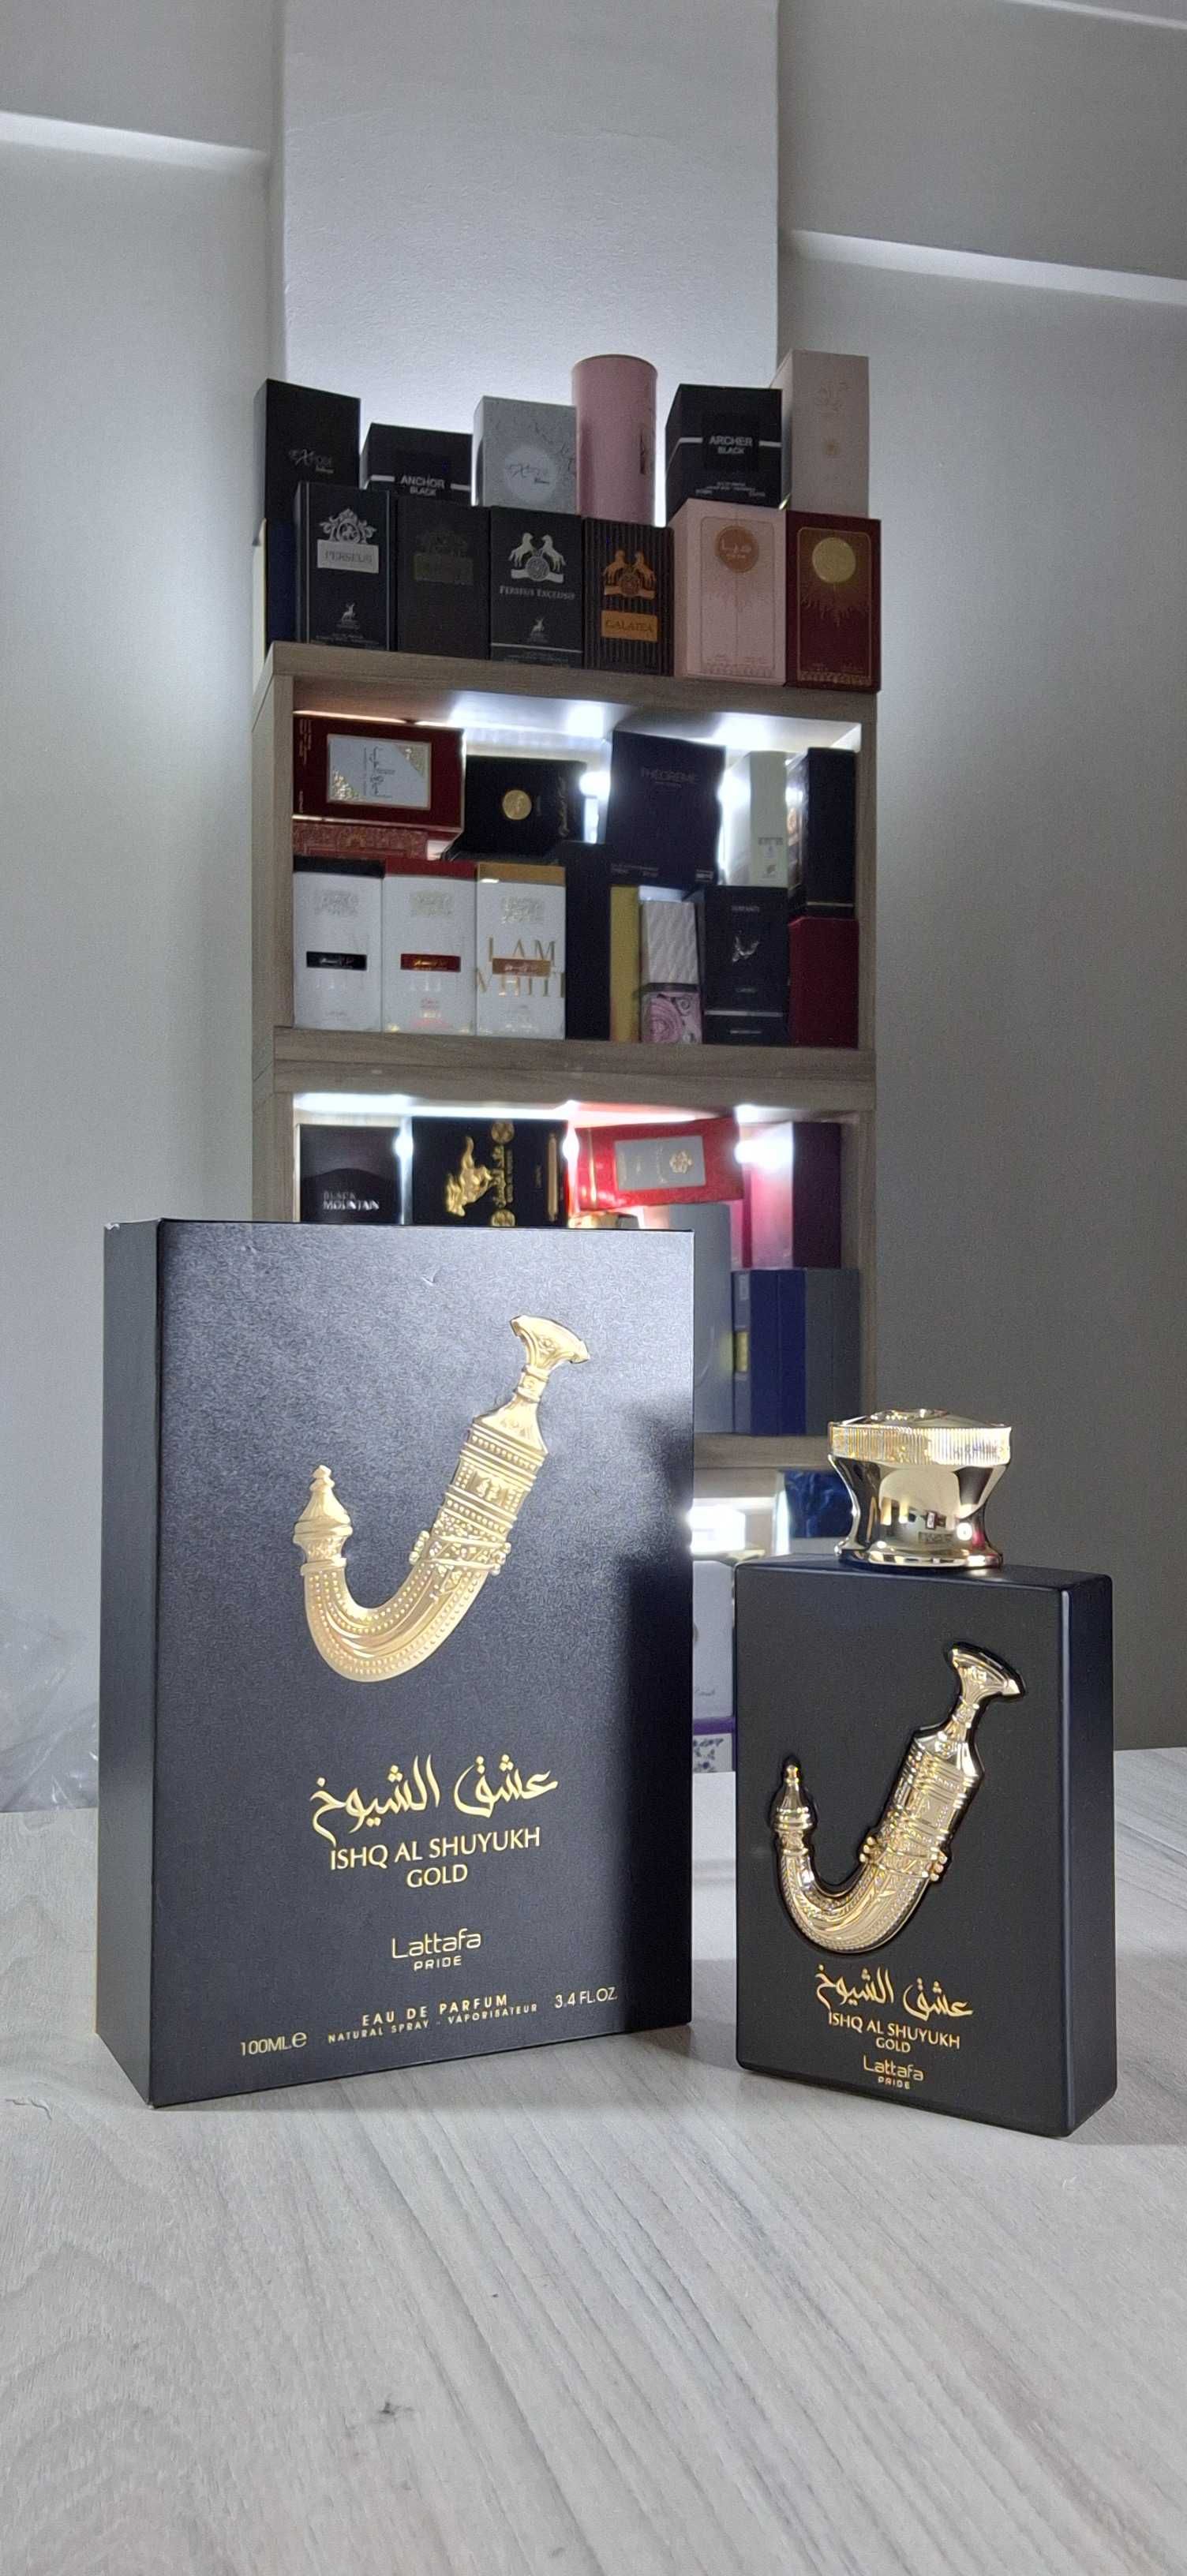 Perfumes Árabes originais